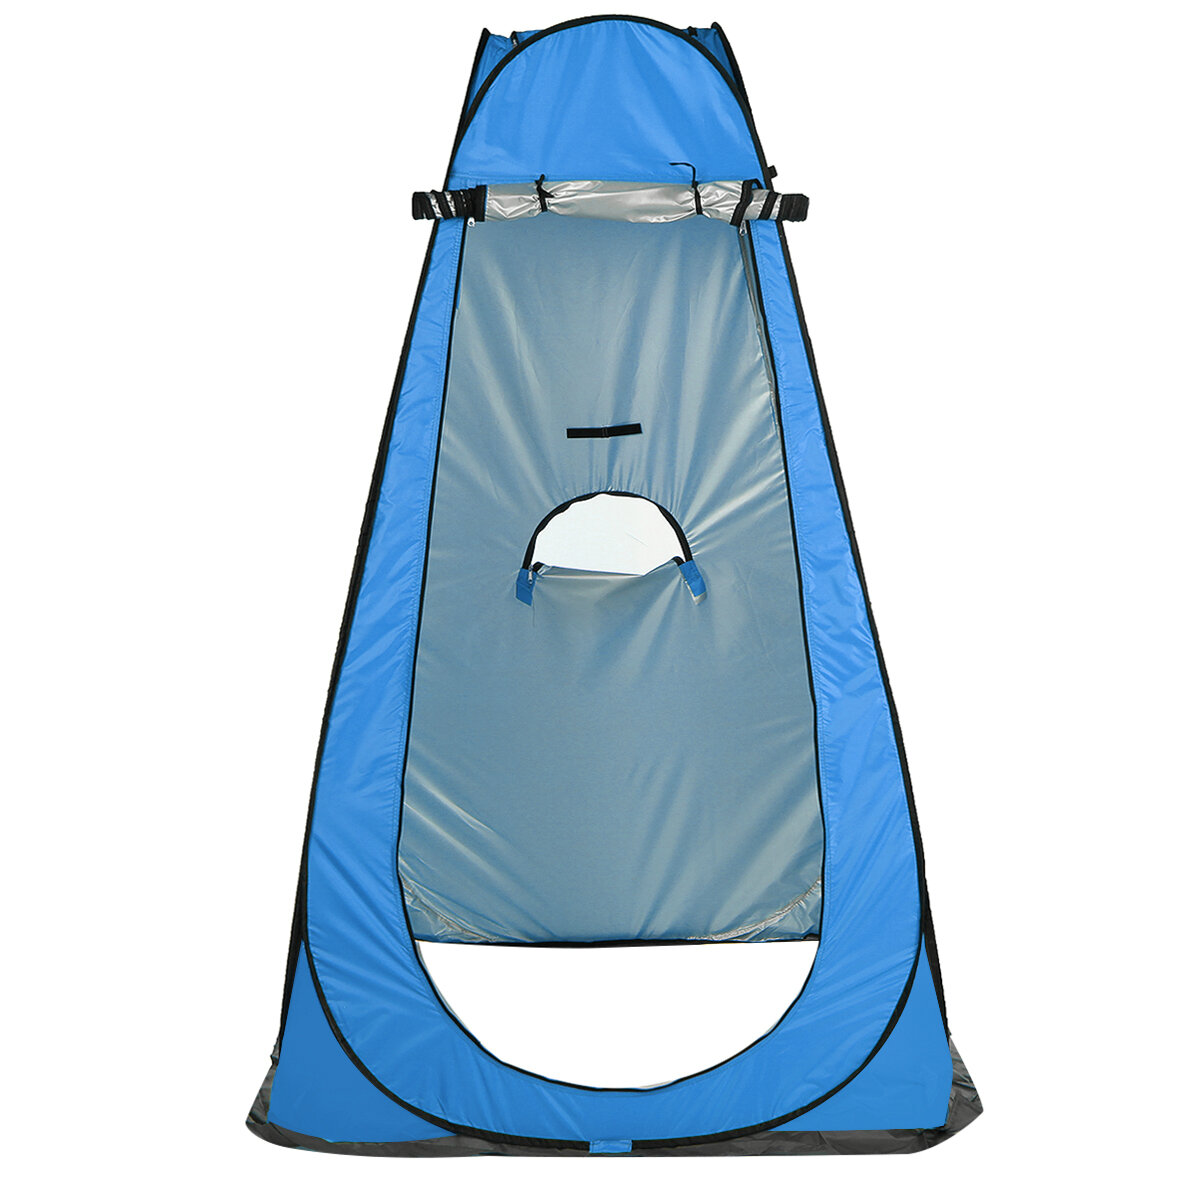 Privatsphäre Duschtoiletten-Zelt für Camping mit UV-Schutz und wasserdichtem Faltdach, tragbar und zusammenklappbar.